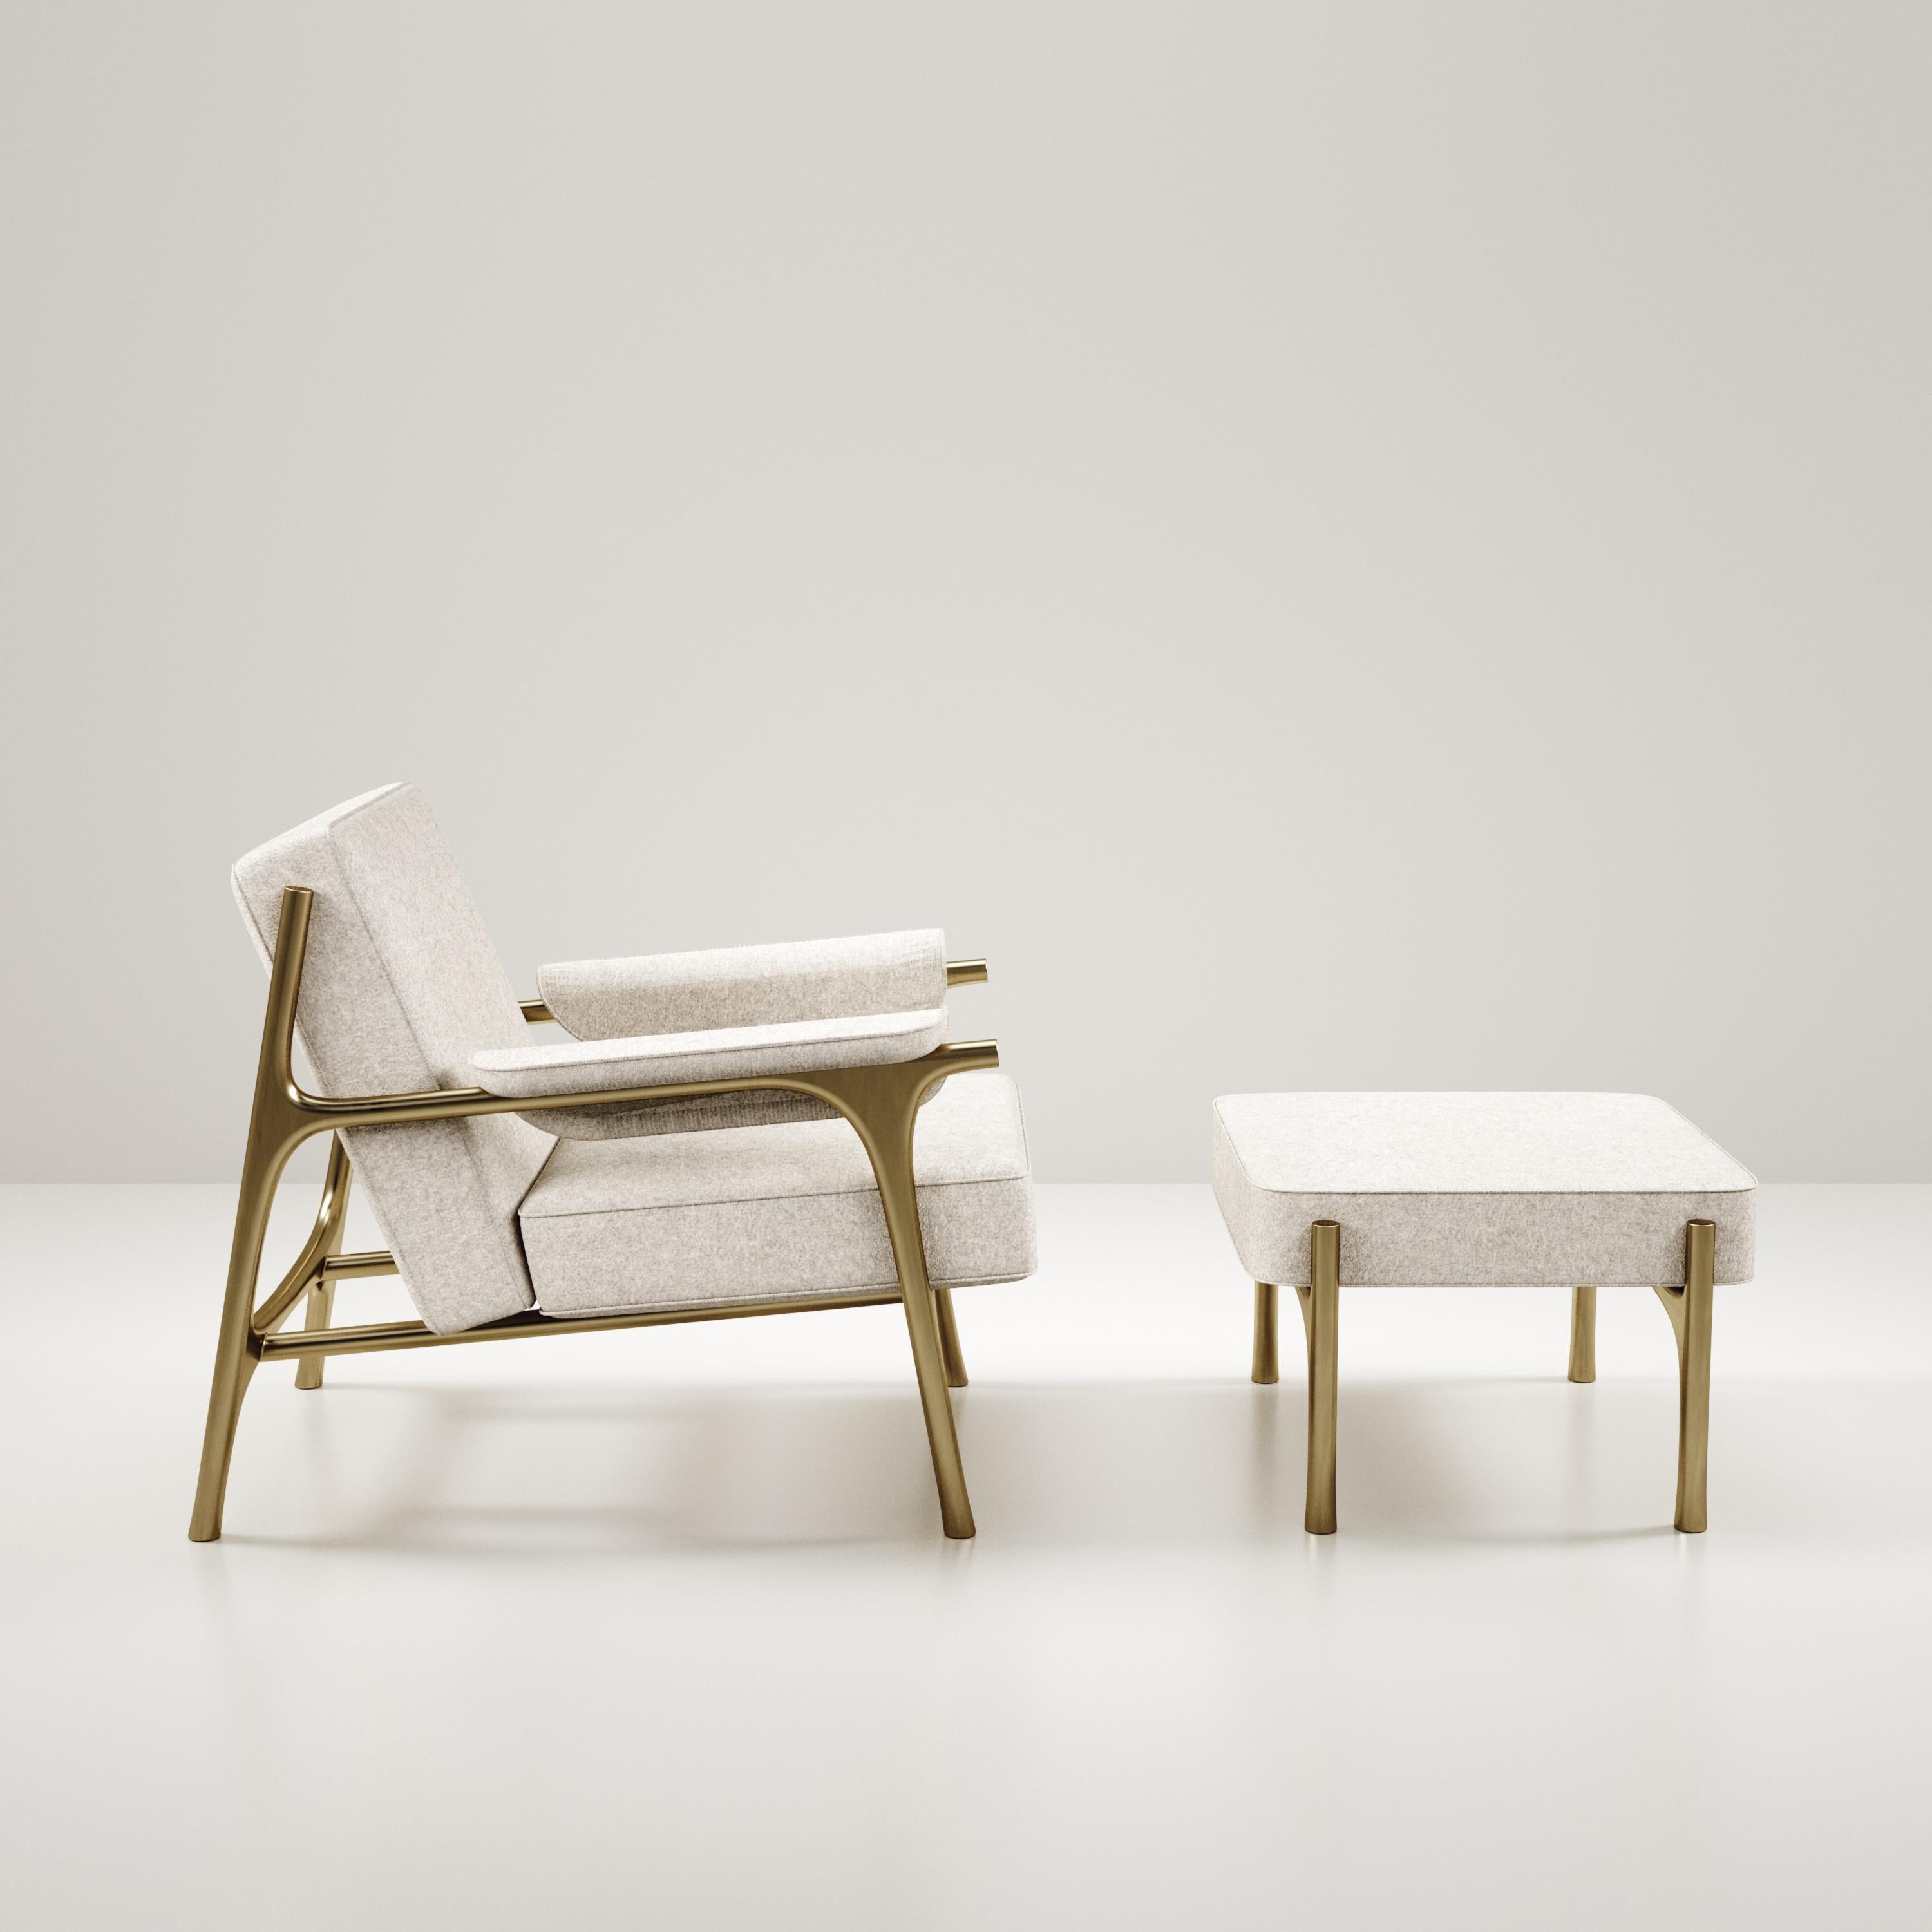 L'ensemble fauteuil et pouf Ramo de R & Y Augousti est une pièce élégante et polyvalente. Les pièces rembourrées offrent du confort tout en conservant une esthétique unique avec le cadre et les détails en laiton bronze-patina. Le prix de cette liste